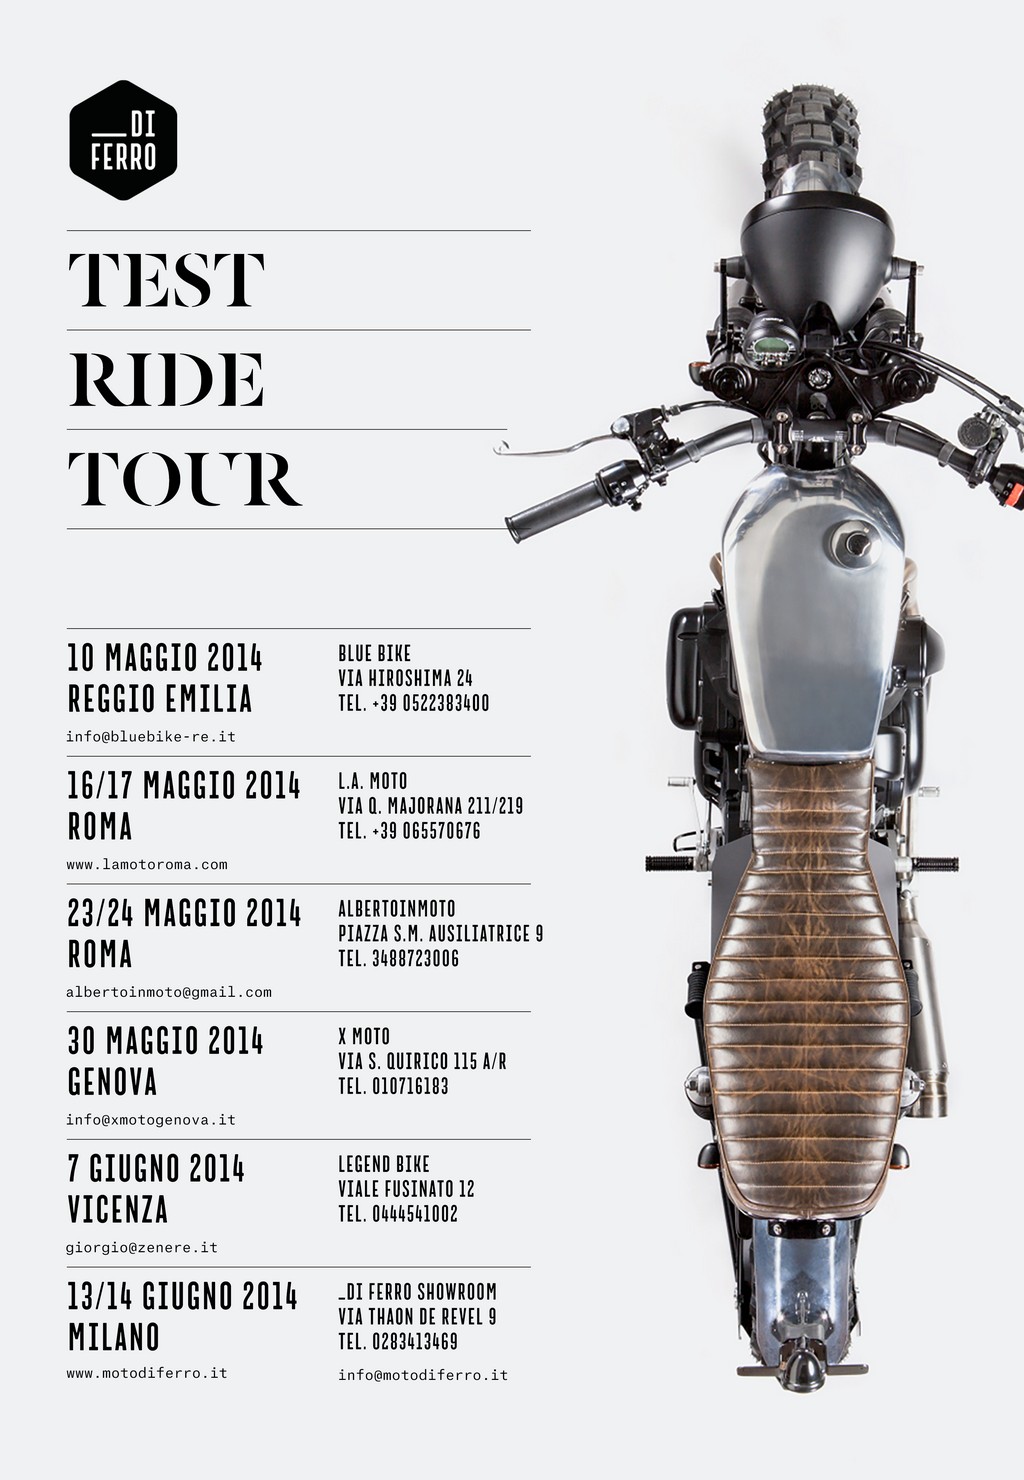 Moto Di Ferro Test Ride Tour